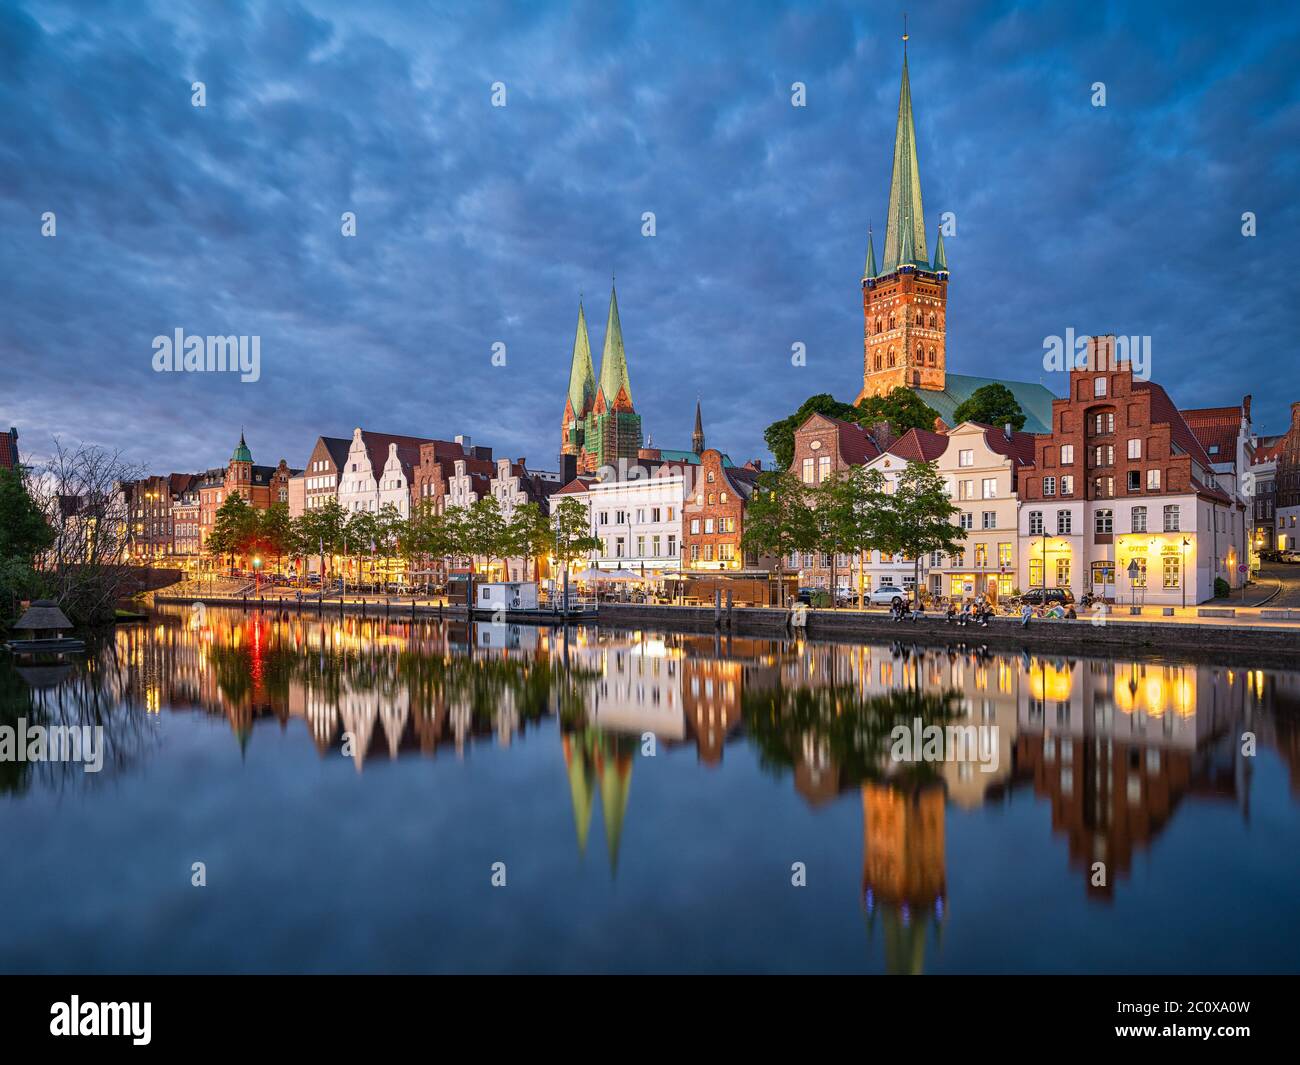 Vieille ville de Lubeck, Allemagne de nuit Banque D'Images